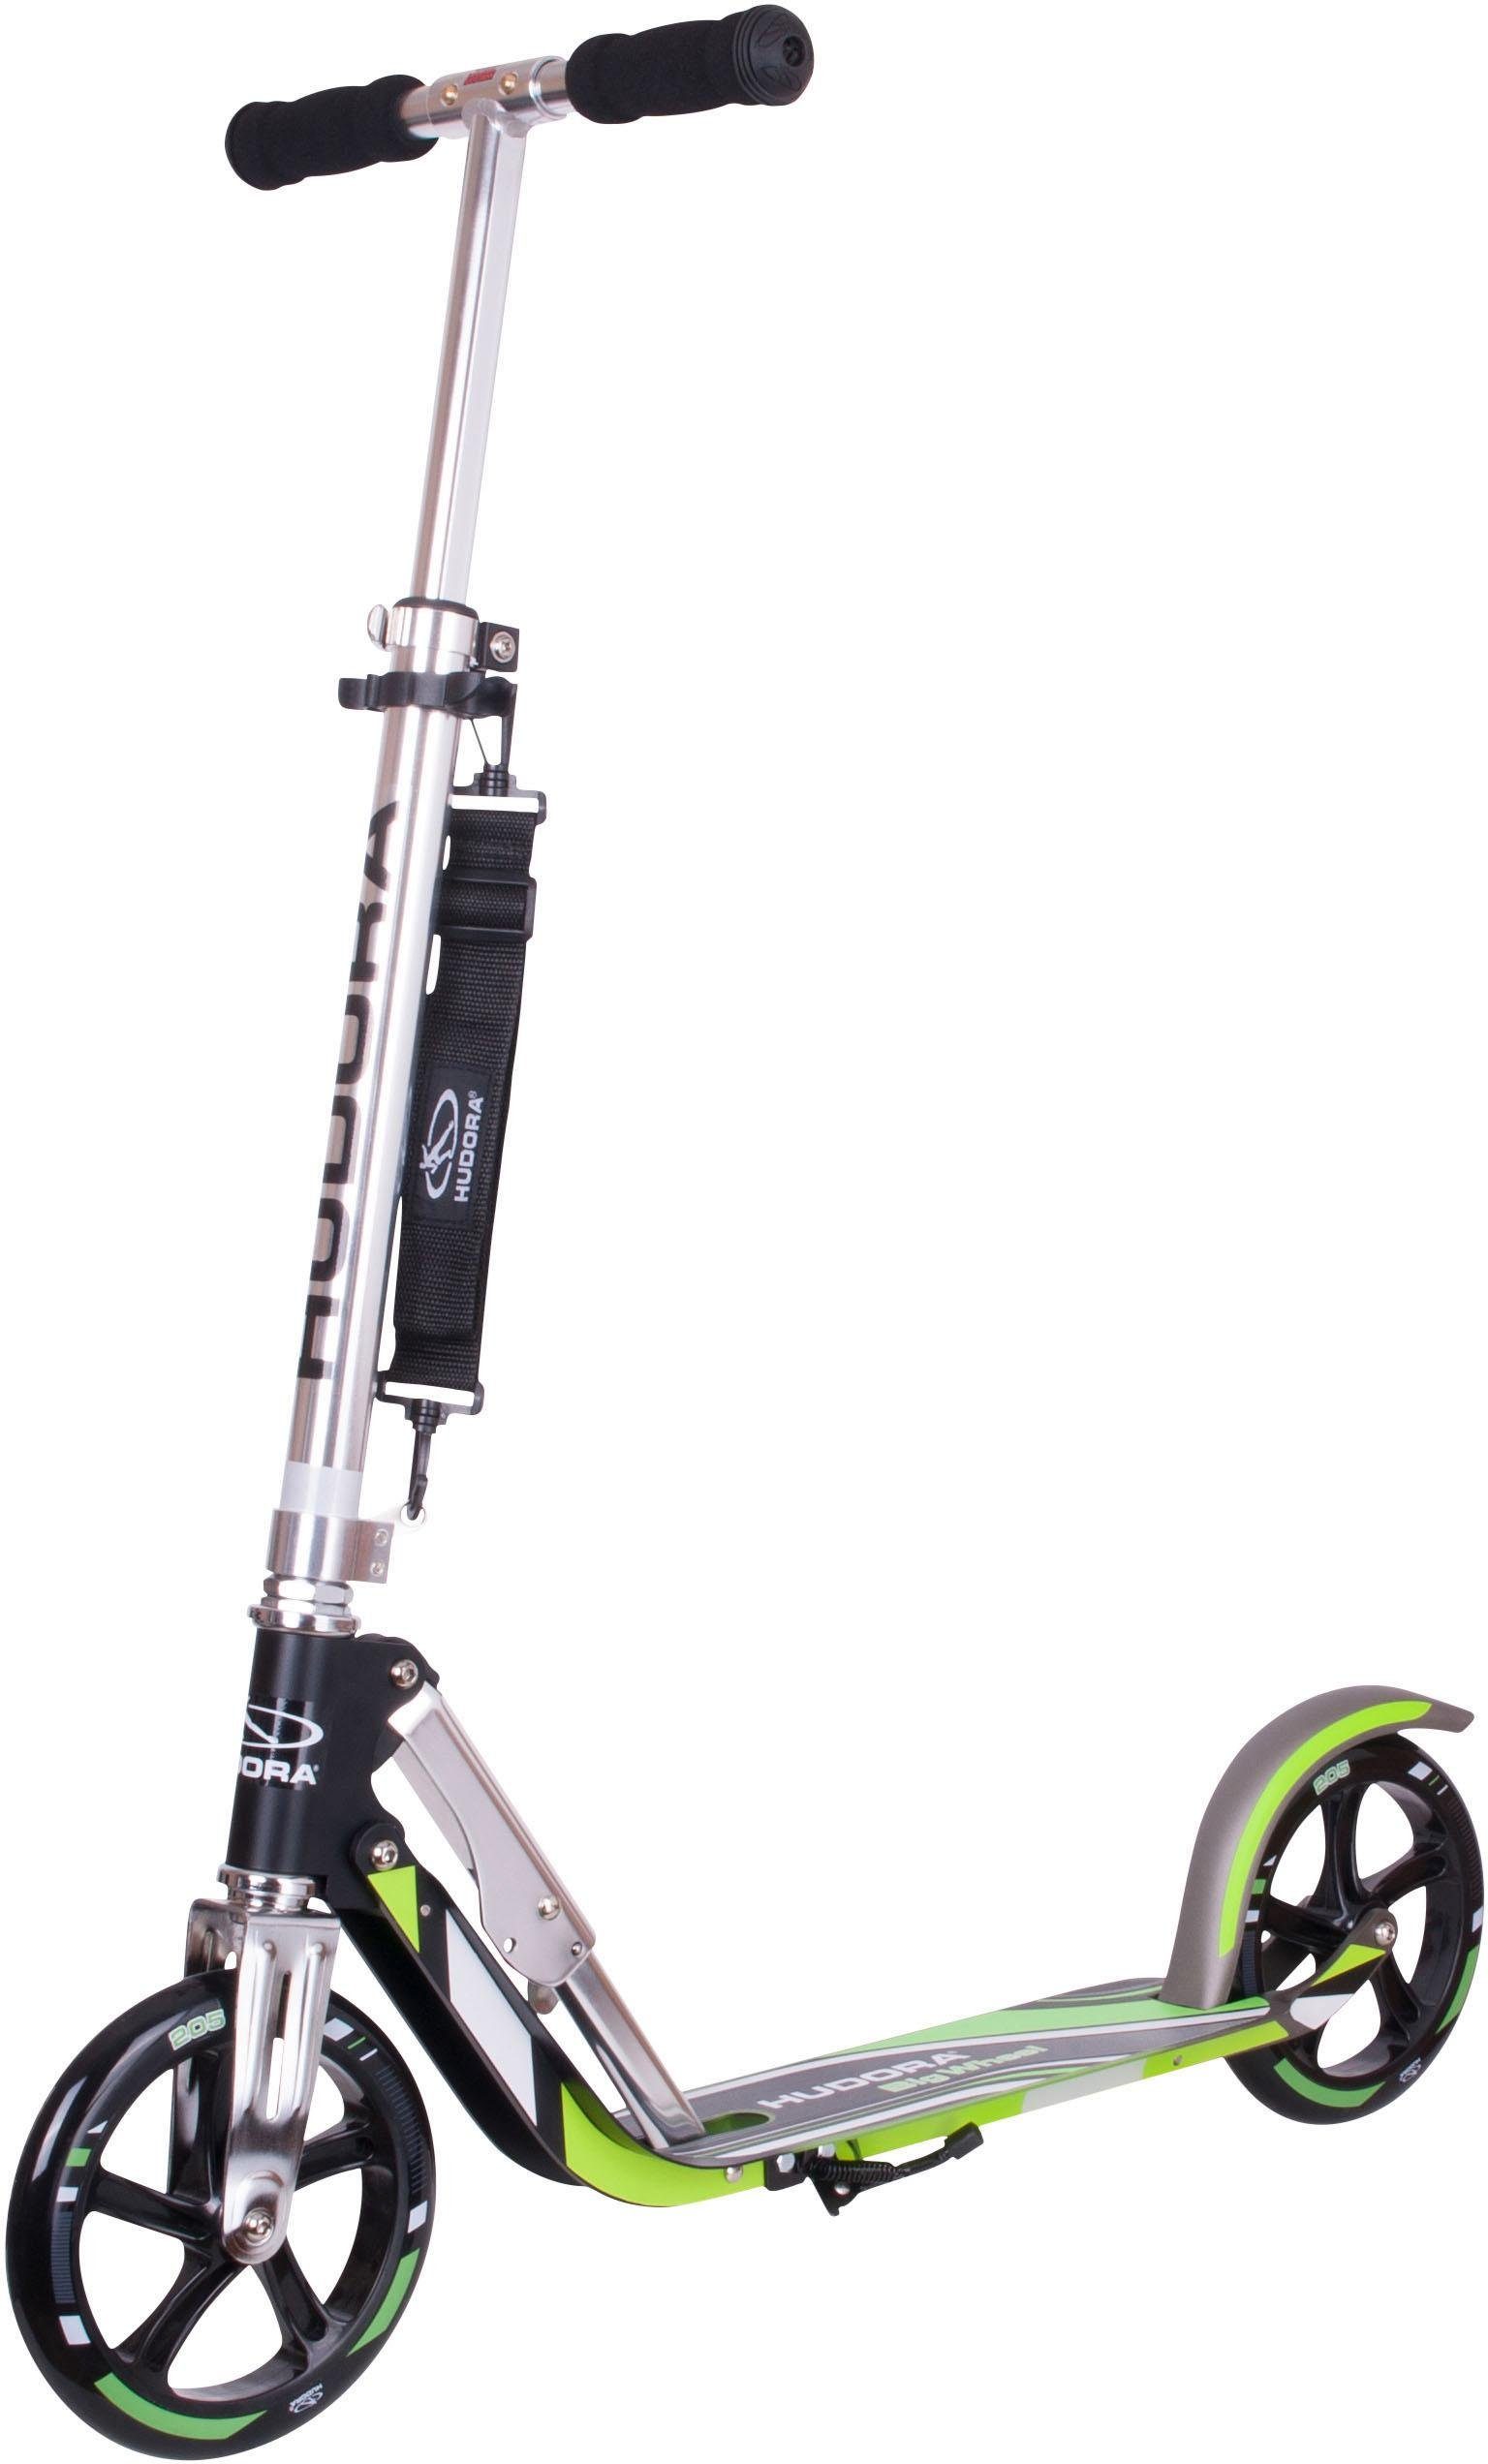 Hudora Scooter Big Wheel 205 schwarz, grün